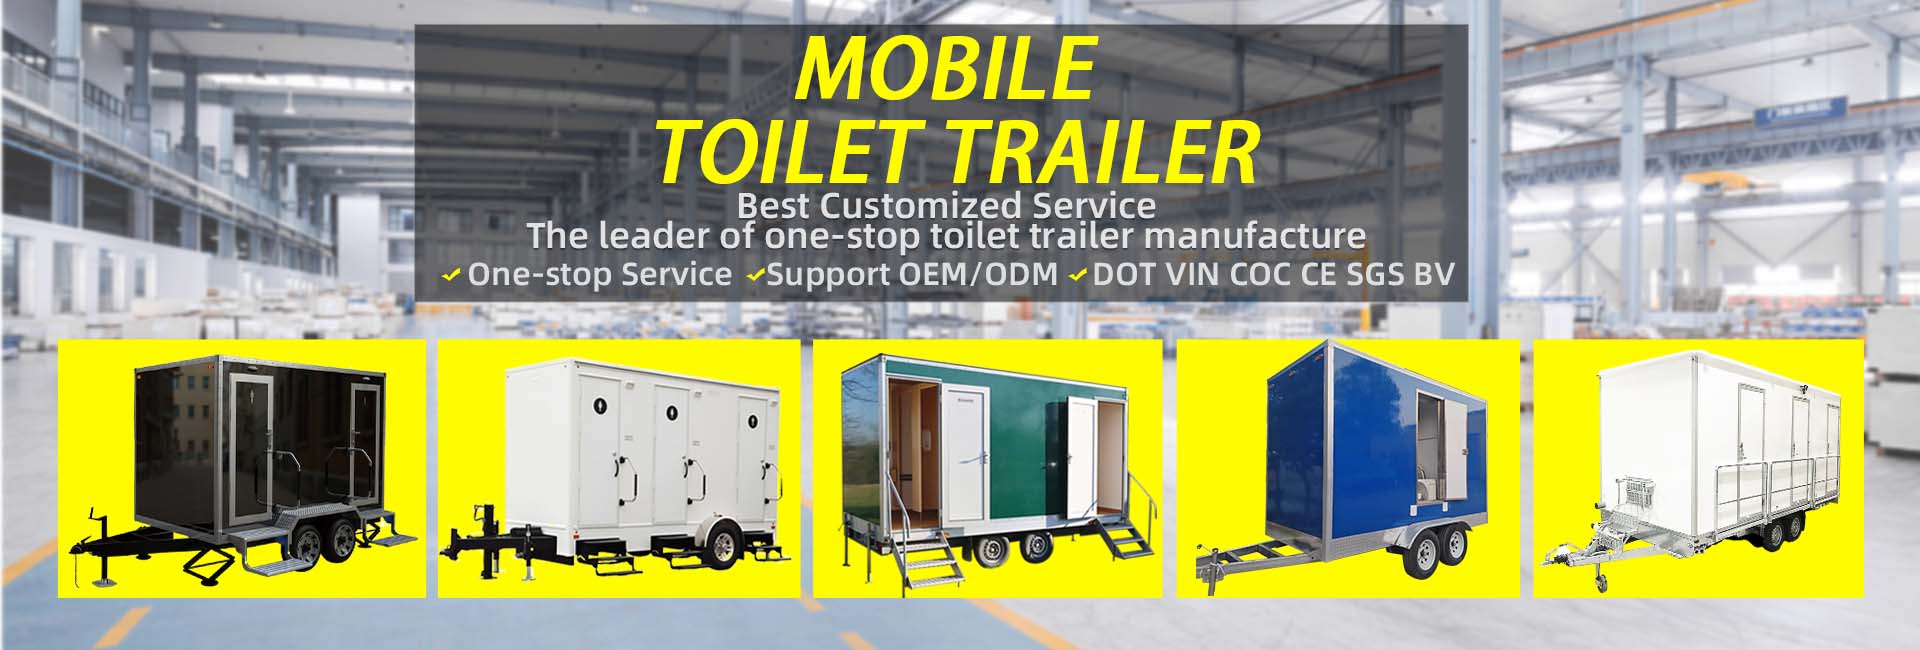 Outdoor portable bathroom restroom mobile toilet trailer 